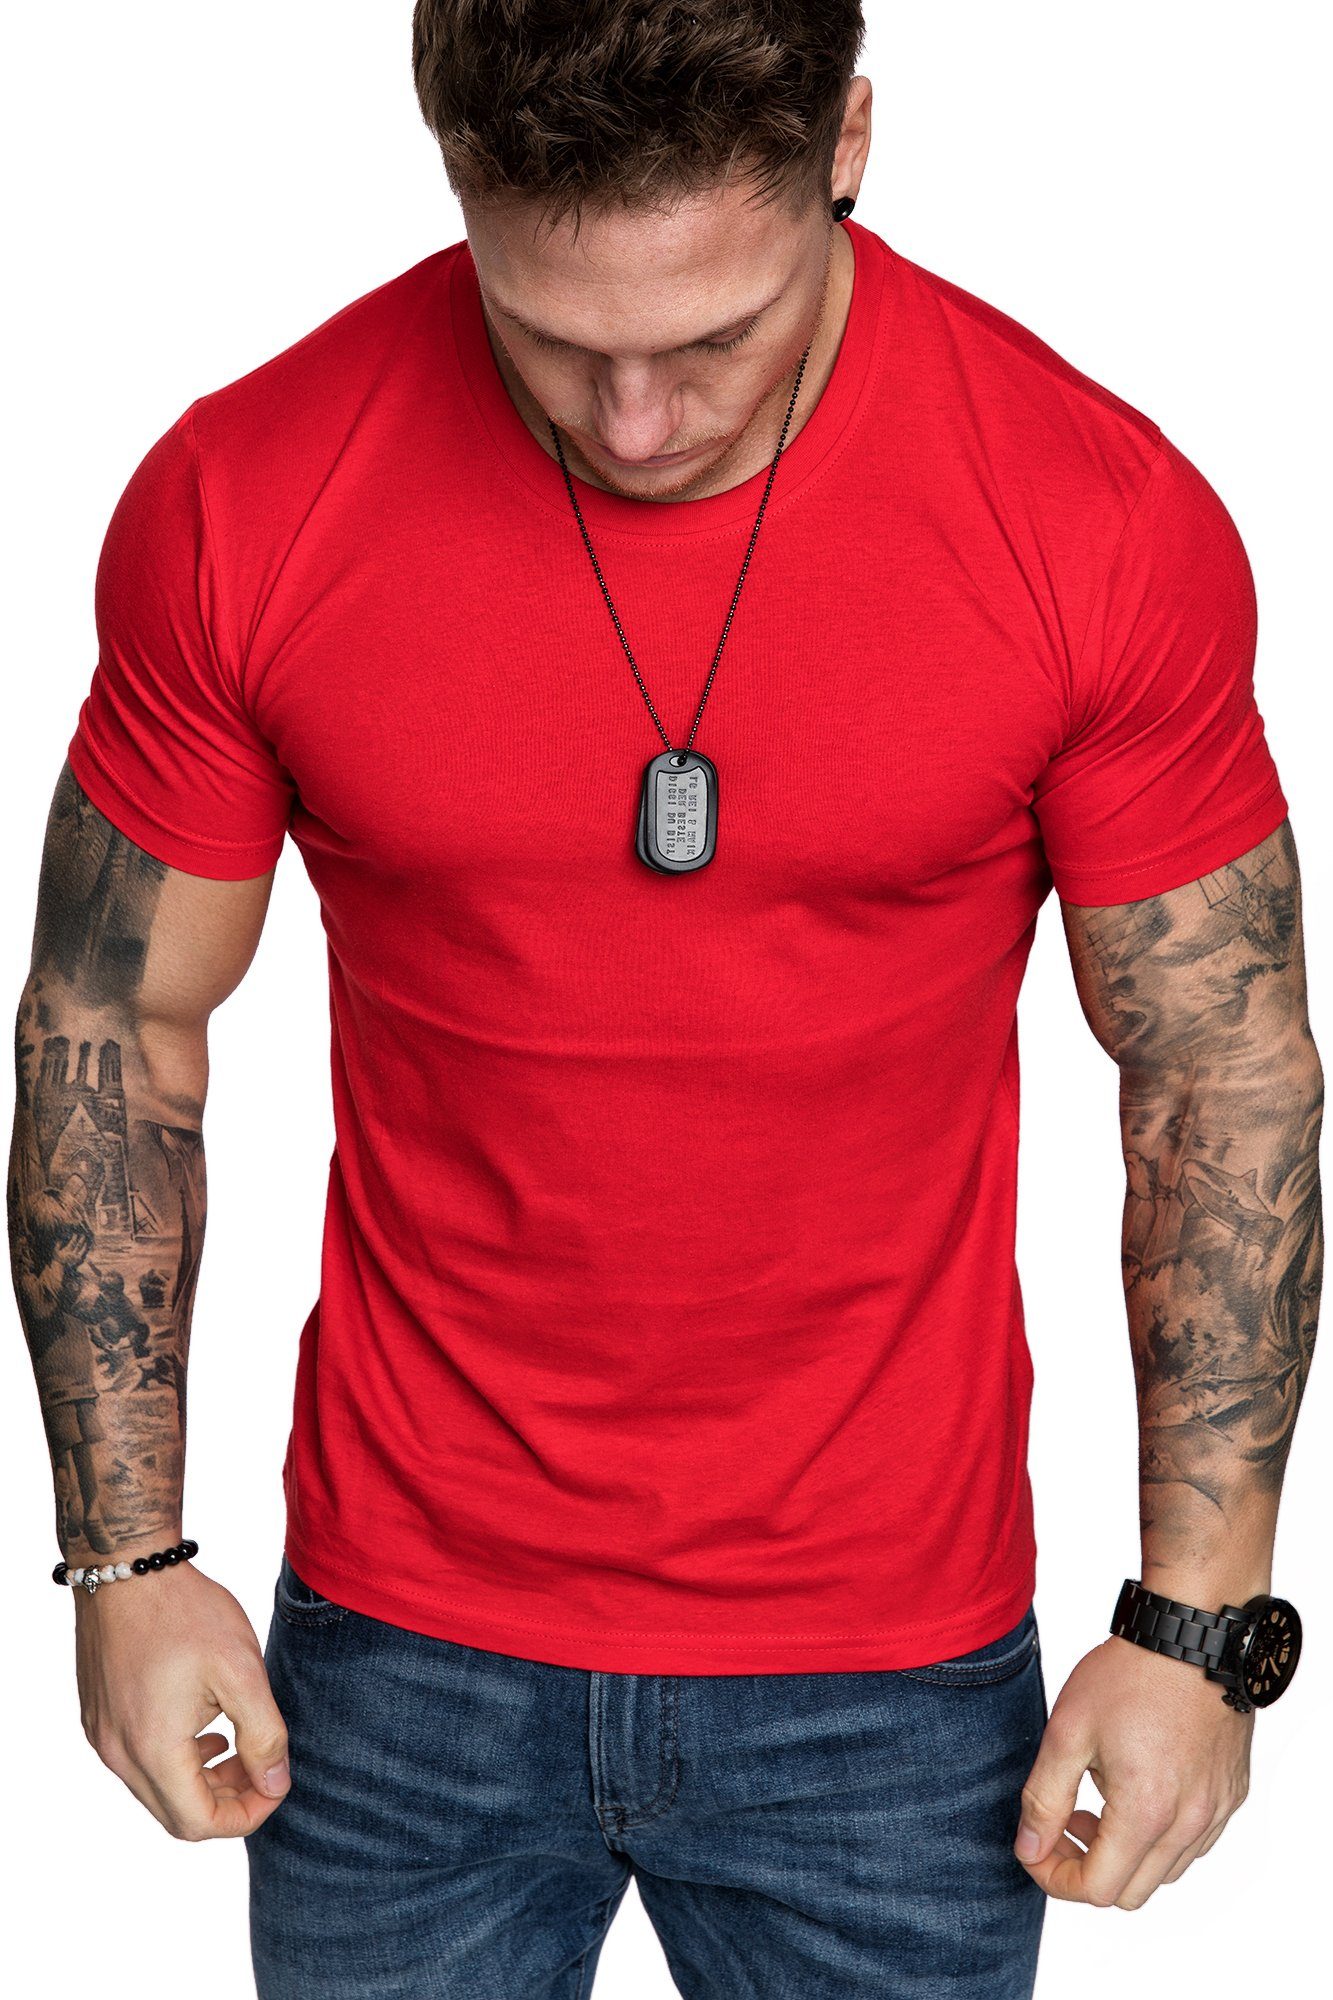 T-Shirt mit Rot T-Shirt Amaci&Sons Crew Basic Rundhalsausschnitt Einfarbig LANCASTER Vintage Herren Basic Rundhalsausschnitt Shirt Neck